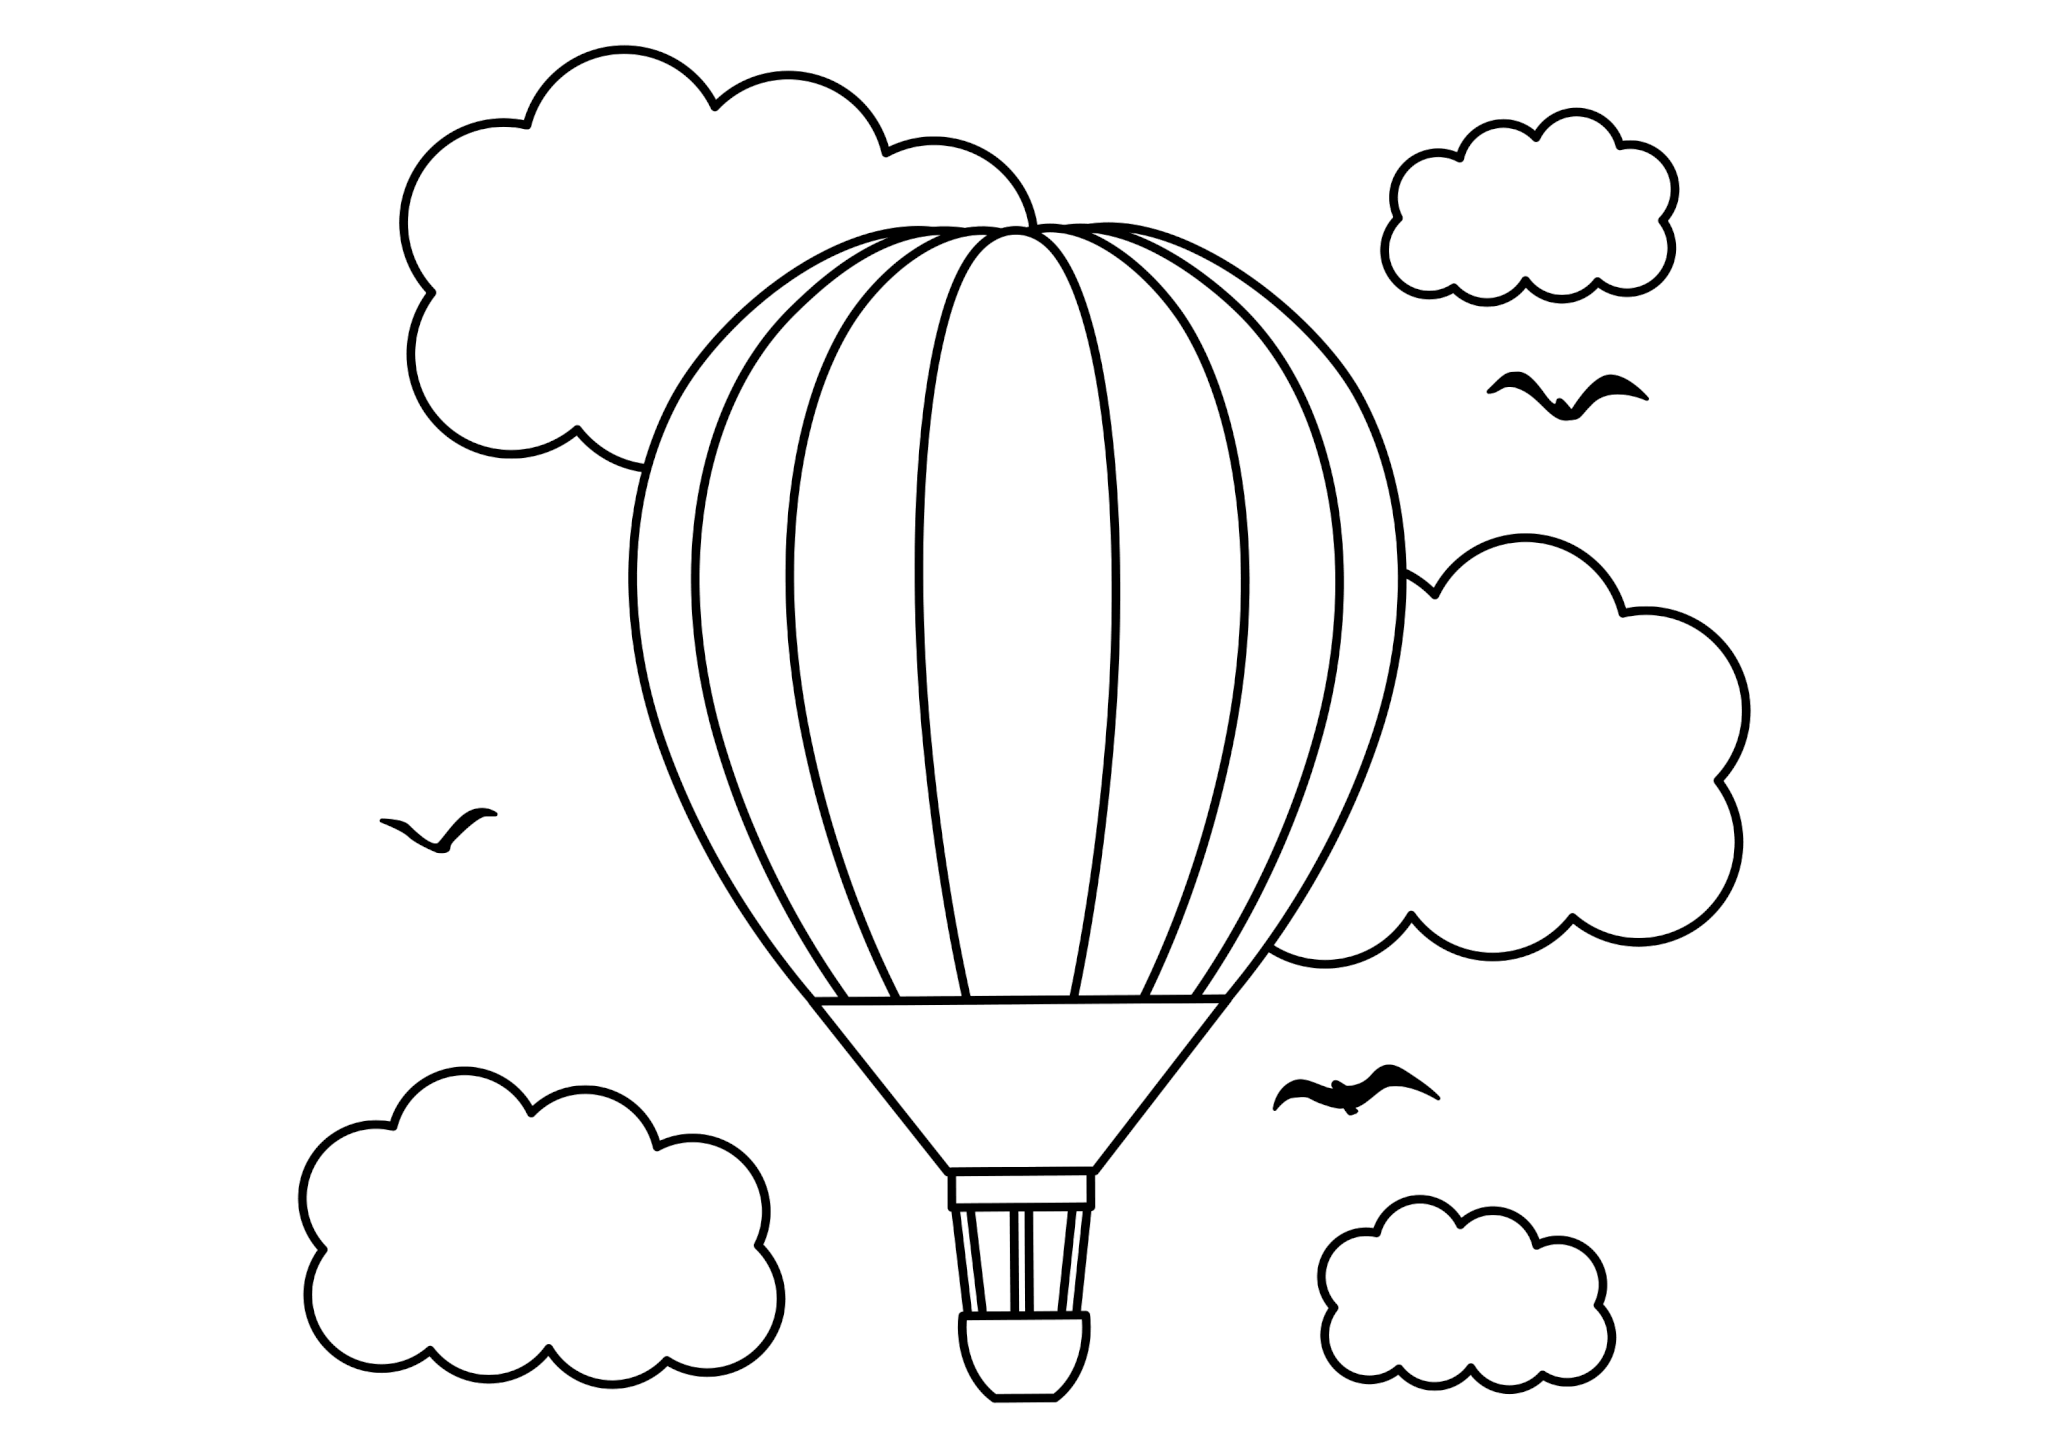 Раскраска Воздушный шар